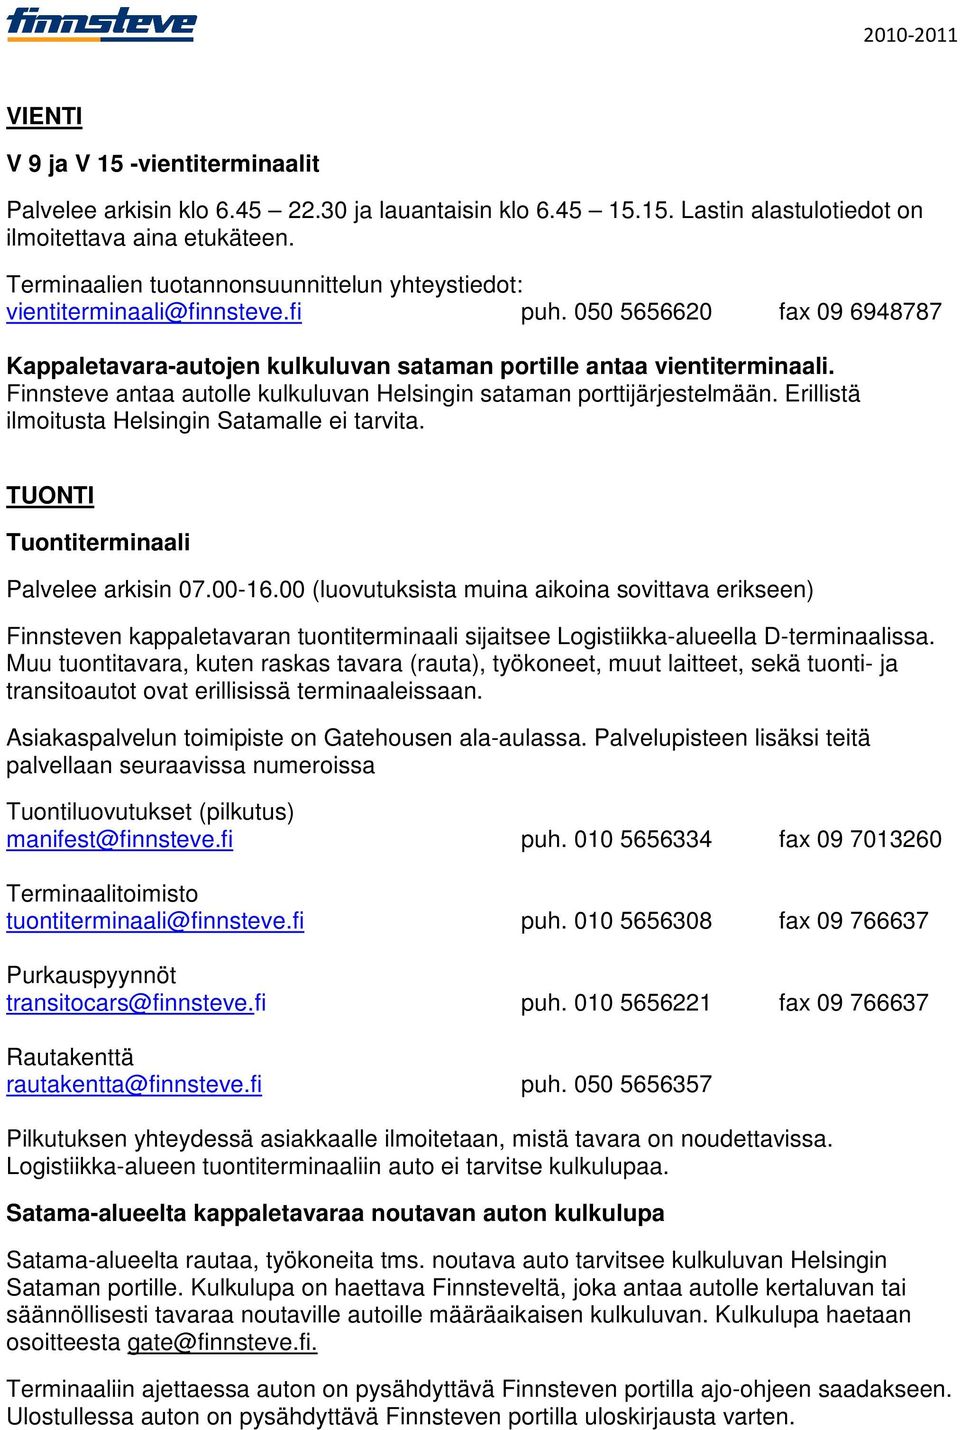 Finnsteve antaa autolle kulkuluvan Helsingin sataman porttijärjestelmään. Erillistä ilmoitusta Helsingin Satamalle ei tarvita. TUONTI Tuontiterminaali Palvelee arkisin 07.00-16.